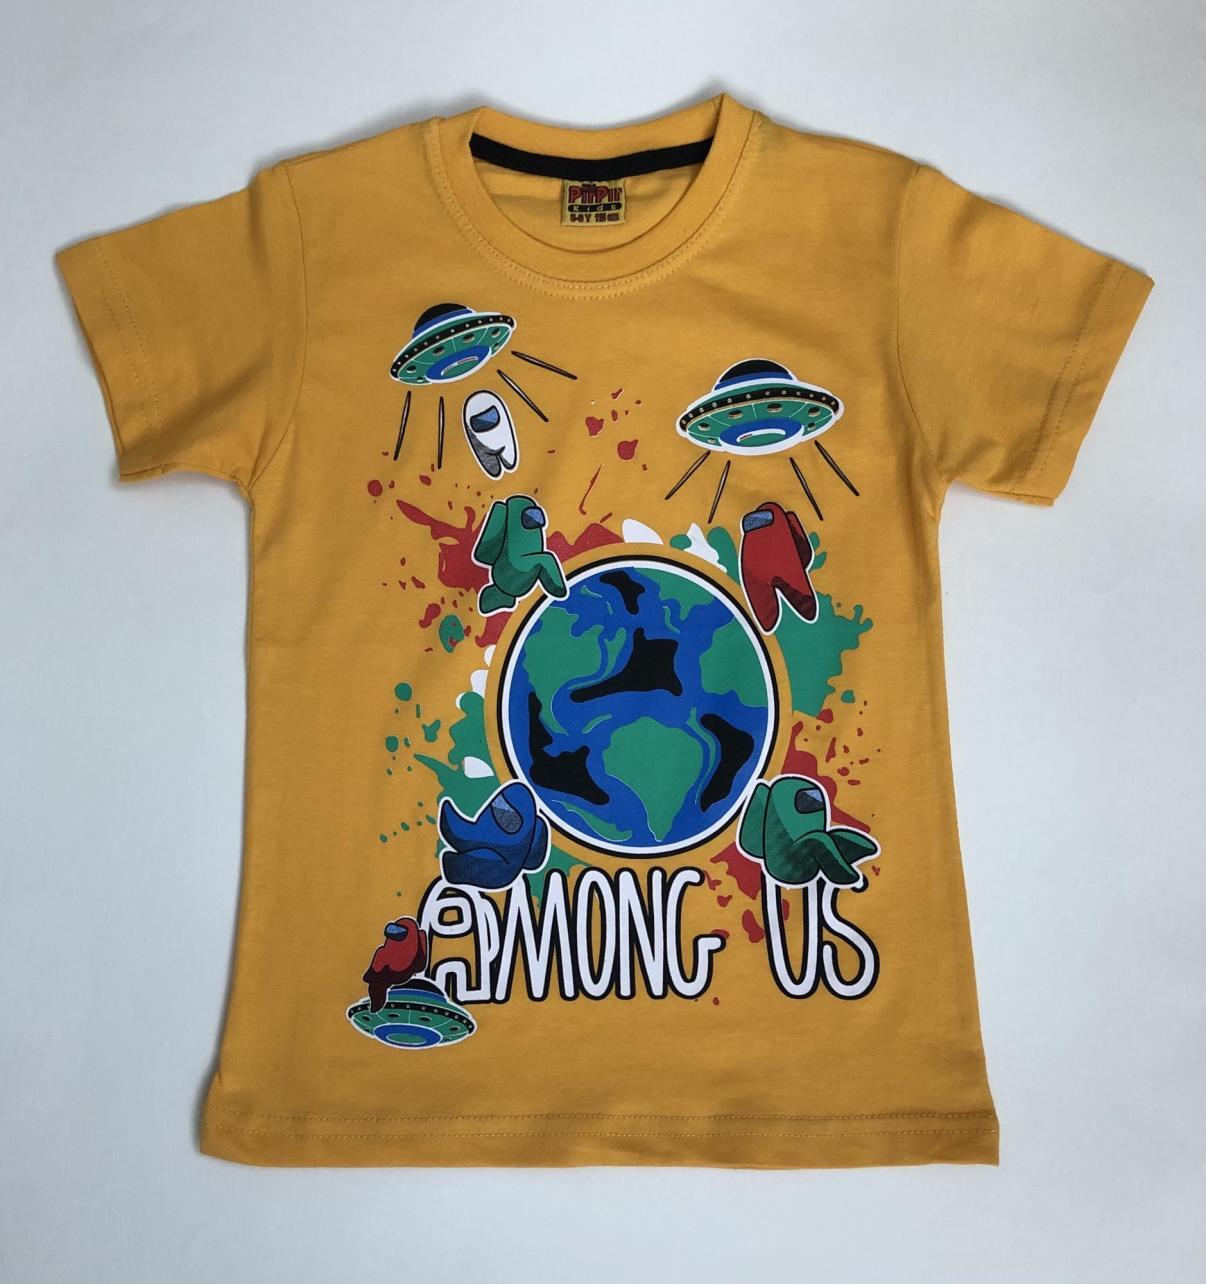 Озон футболки шорты. Футболка Озон. Самые дешевые товары на Озоне футболки. Футболки в Озоне по 99 руб. Цветные футболки на Озоне.